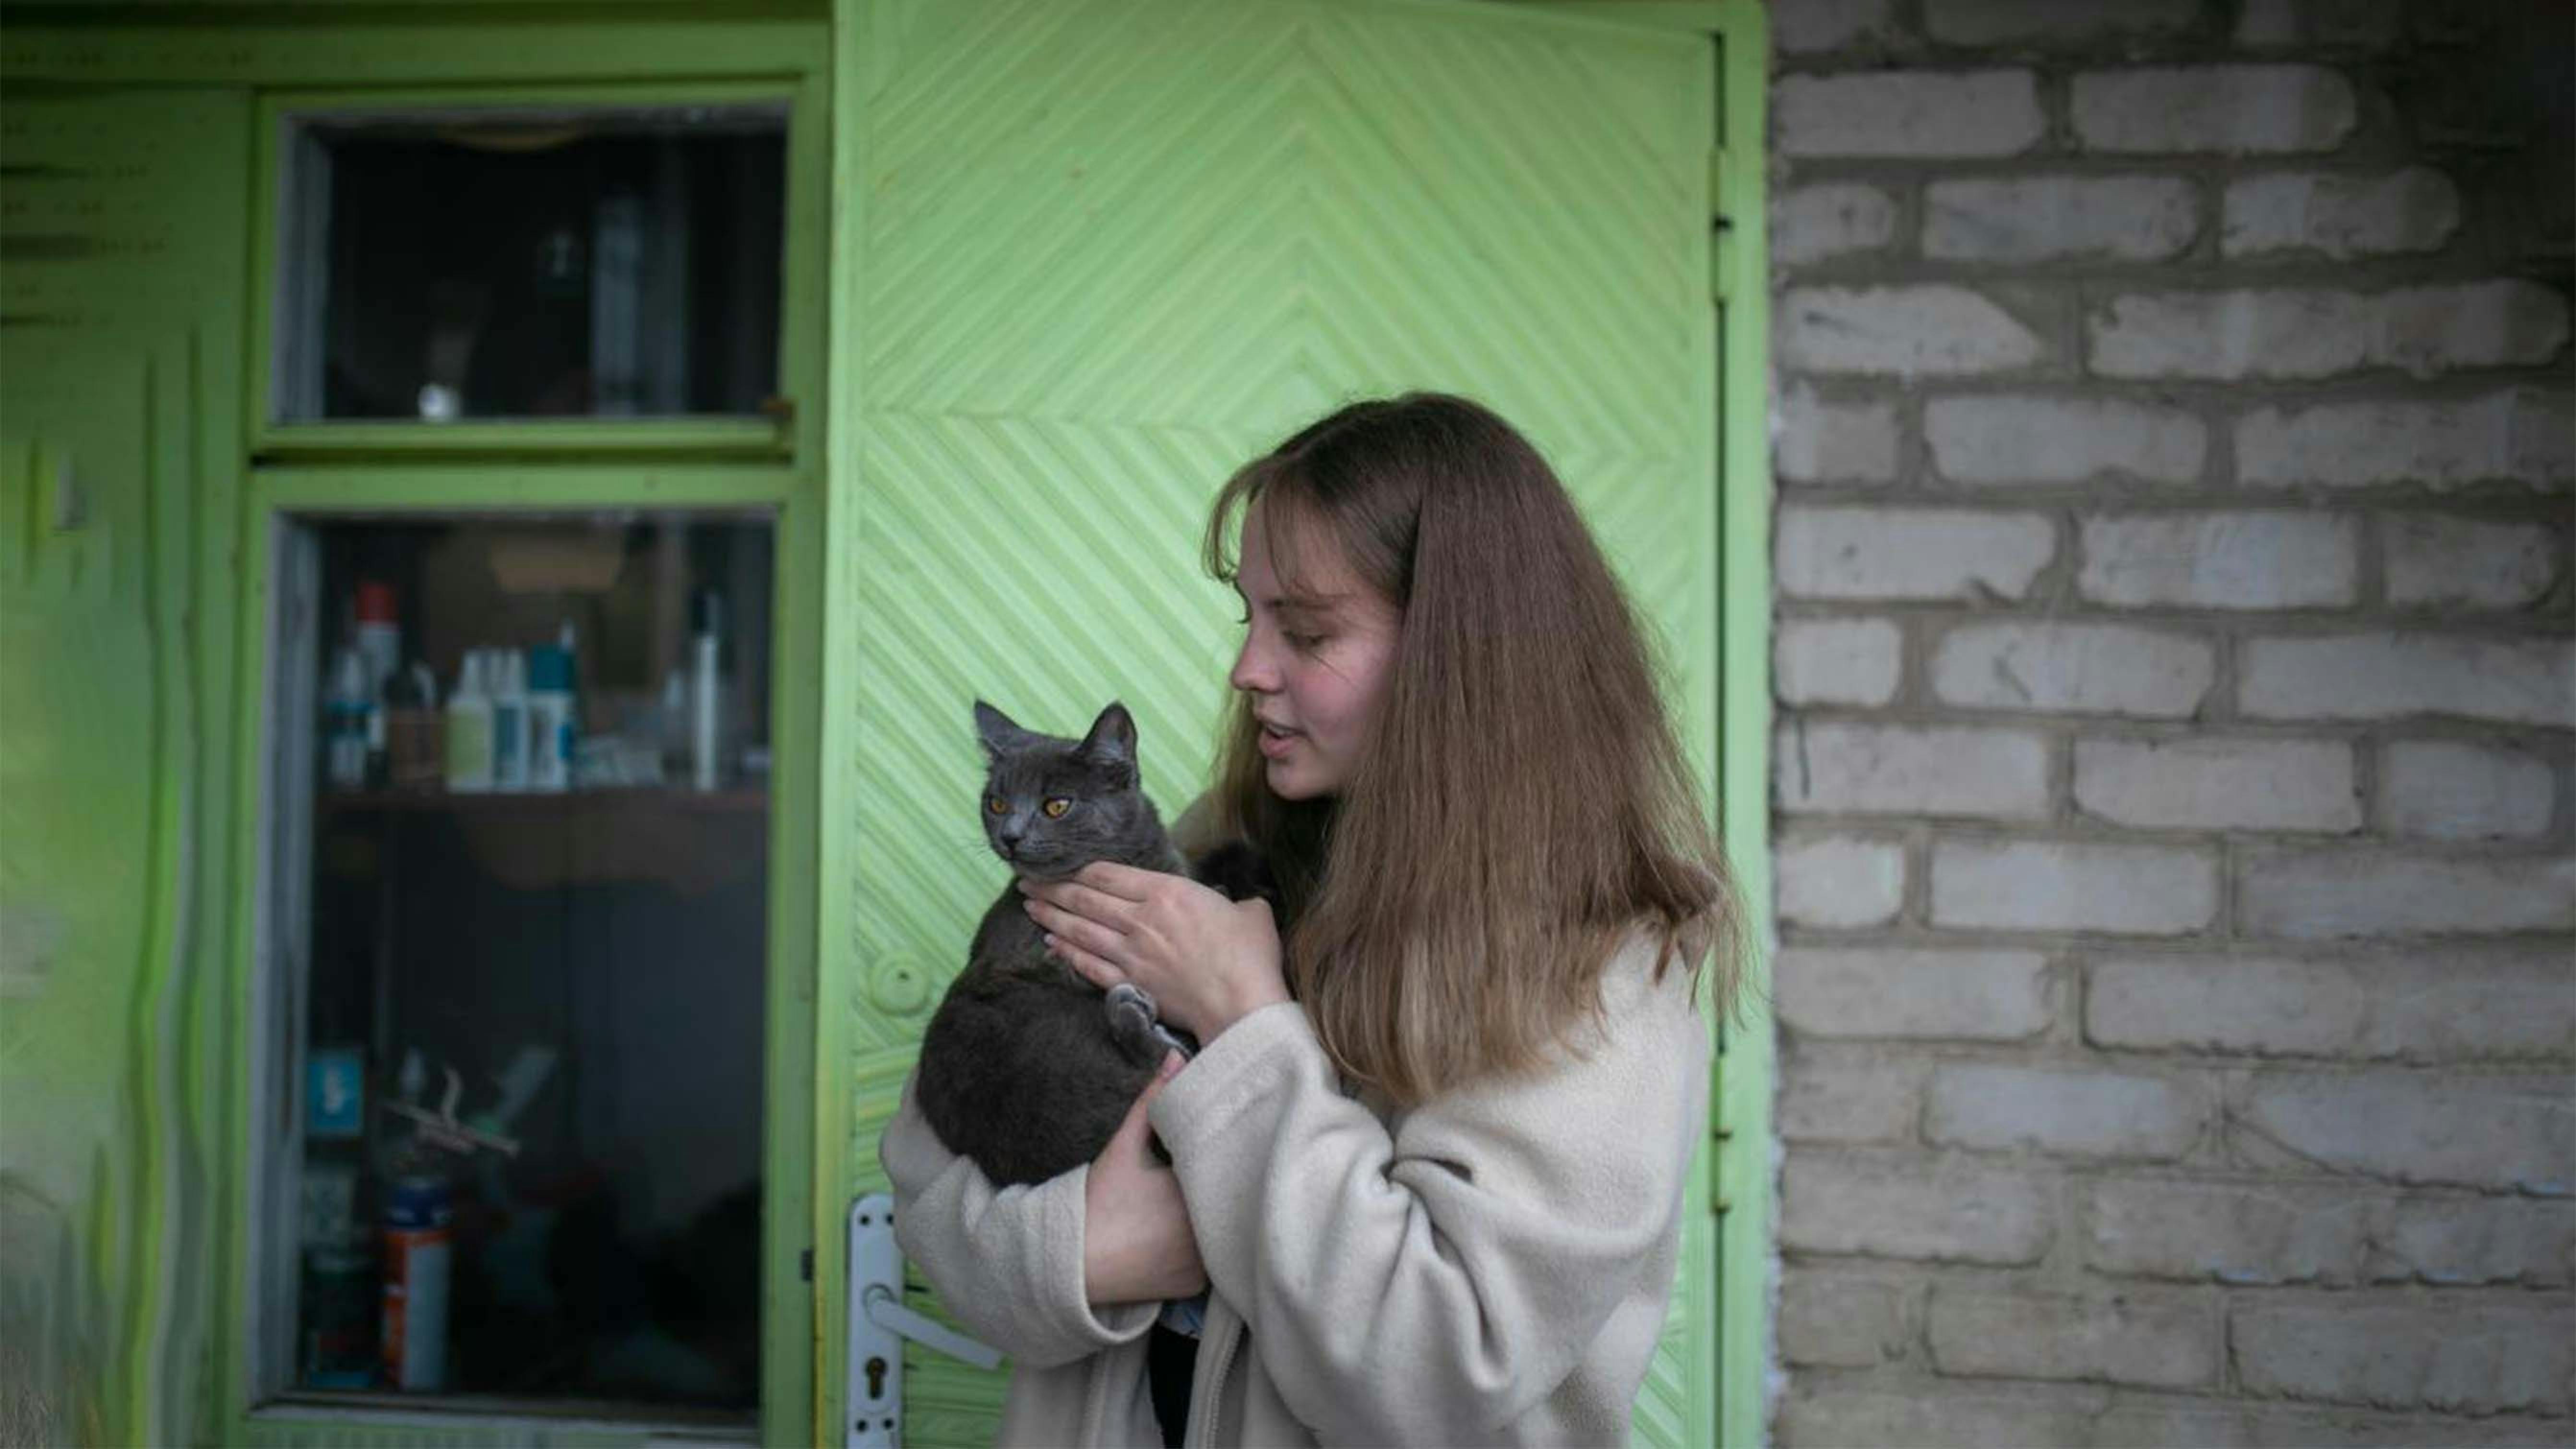 Natalka, 16 anni: storia di un’infanzia devastata dal conflitto armato nell’Ucraina orientale